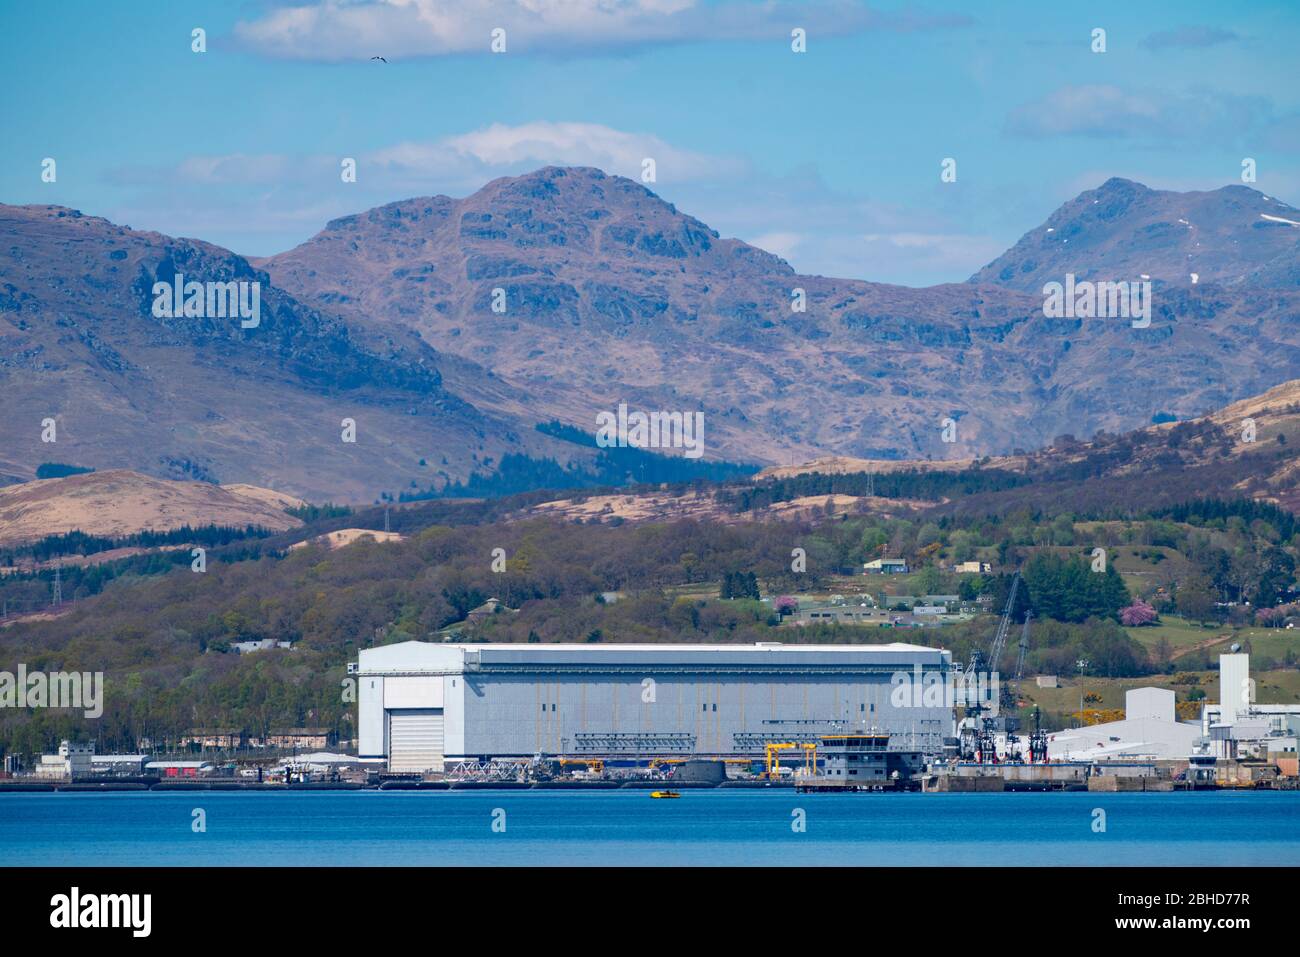 Visualizza HMNB Clyde la base sottomarina navale britannica a Faslane sulla Gare Loch ad Argyll & Bute, Scozia, Regno Unito Foto Stock